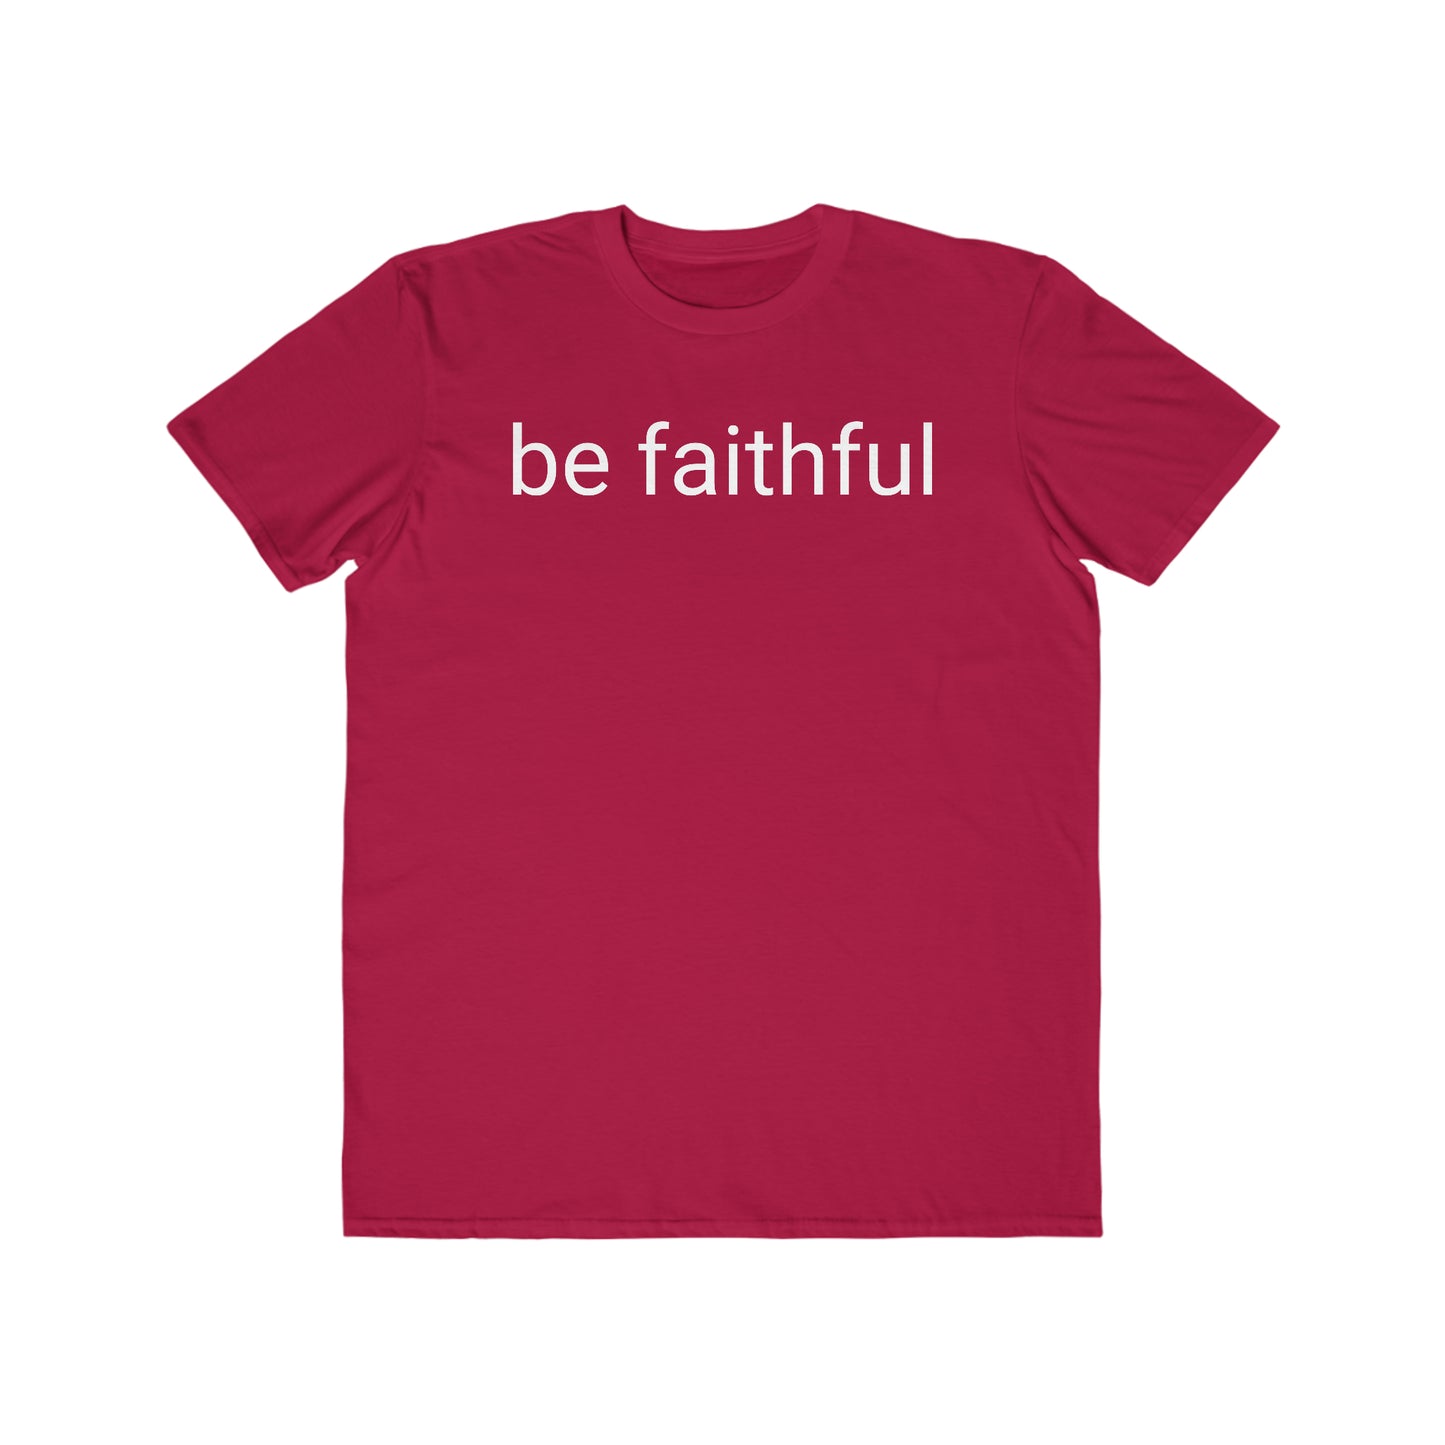 Be Faithful - Men's Lightweight Fashion Tee